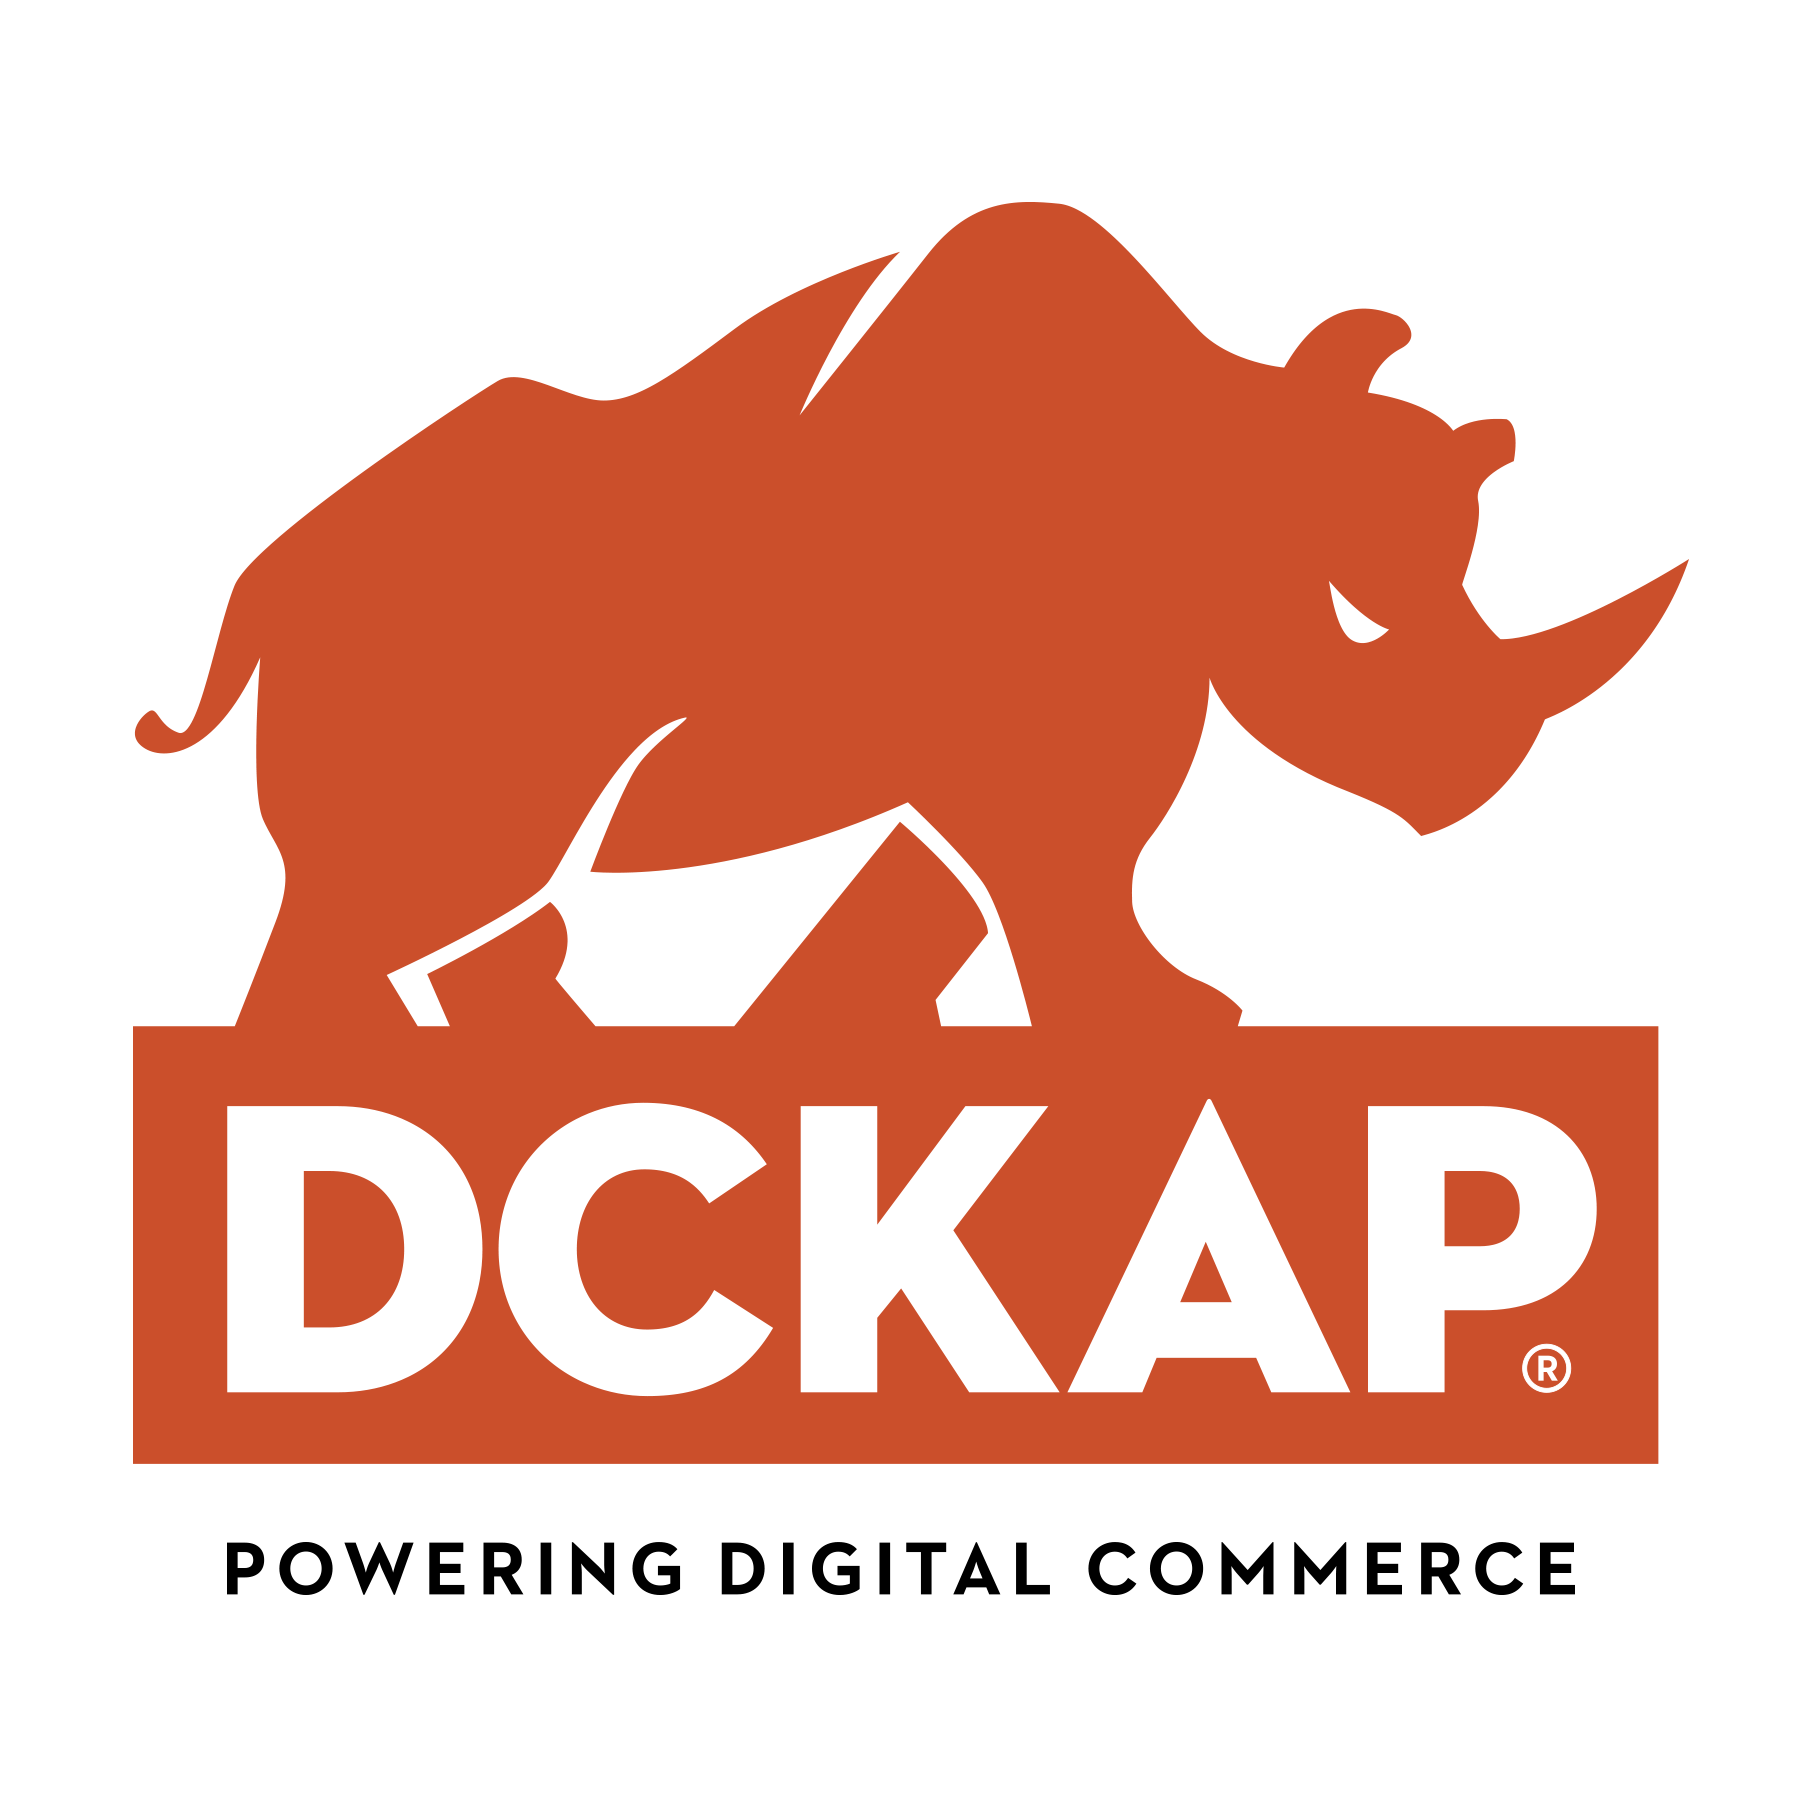 DCKAP Digital Commerce Agency - DCKAP